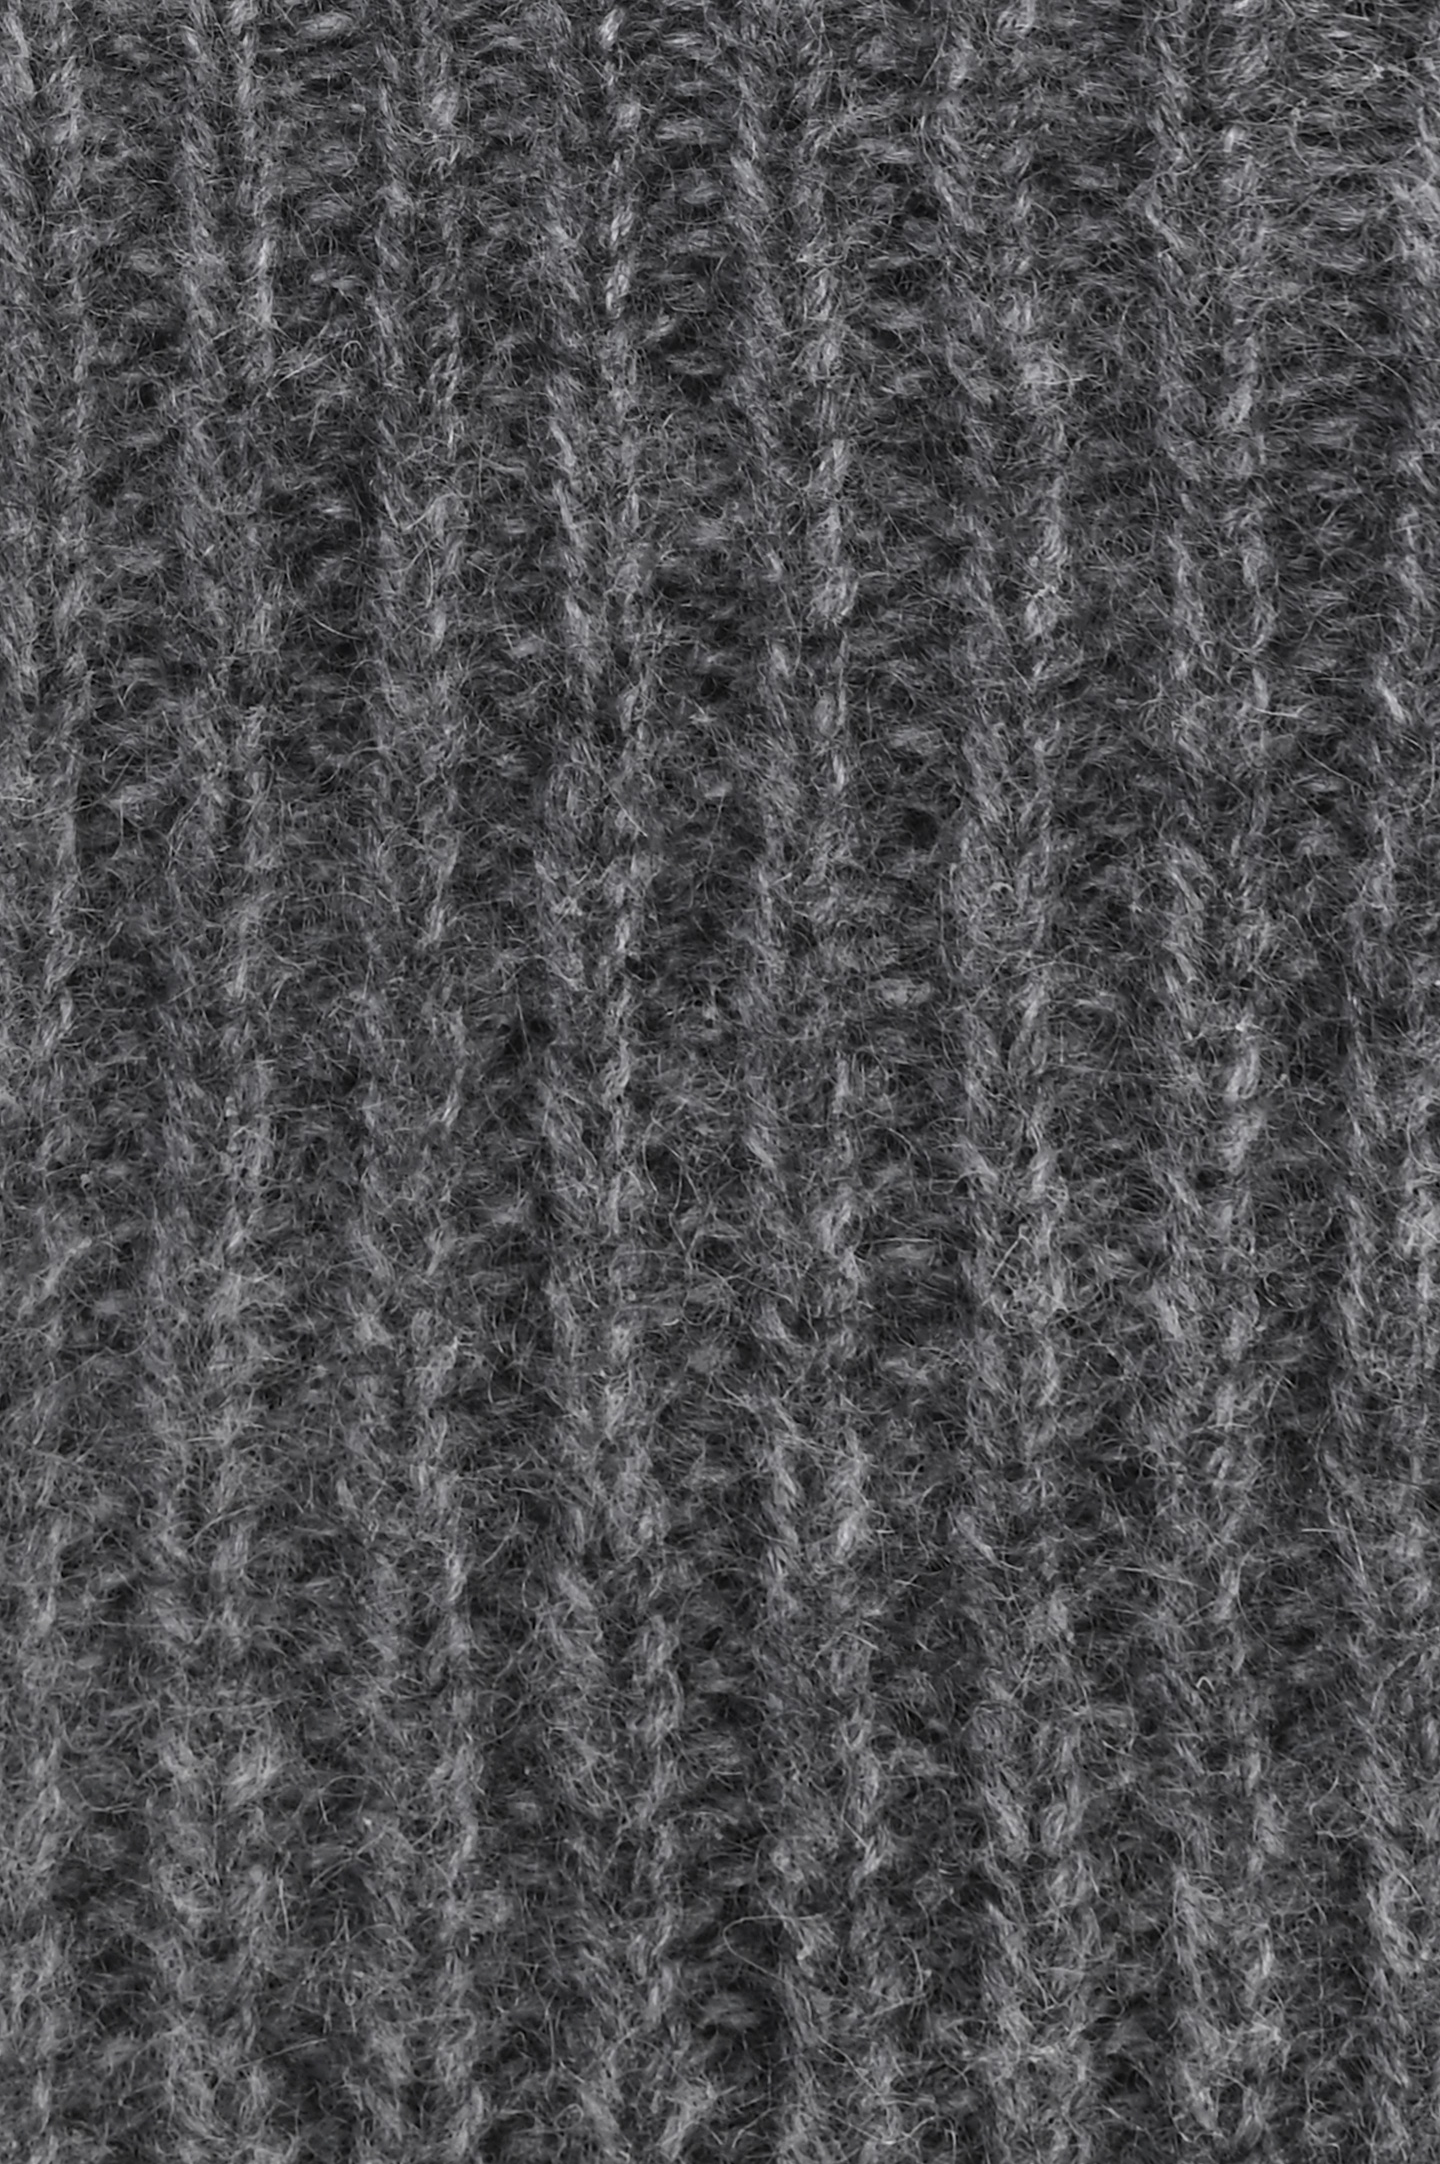 Перчатки DORIANI CASHMERE GU-4, цвет: Серый, Мужской